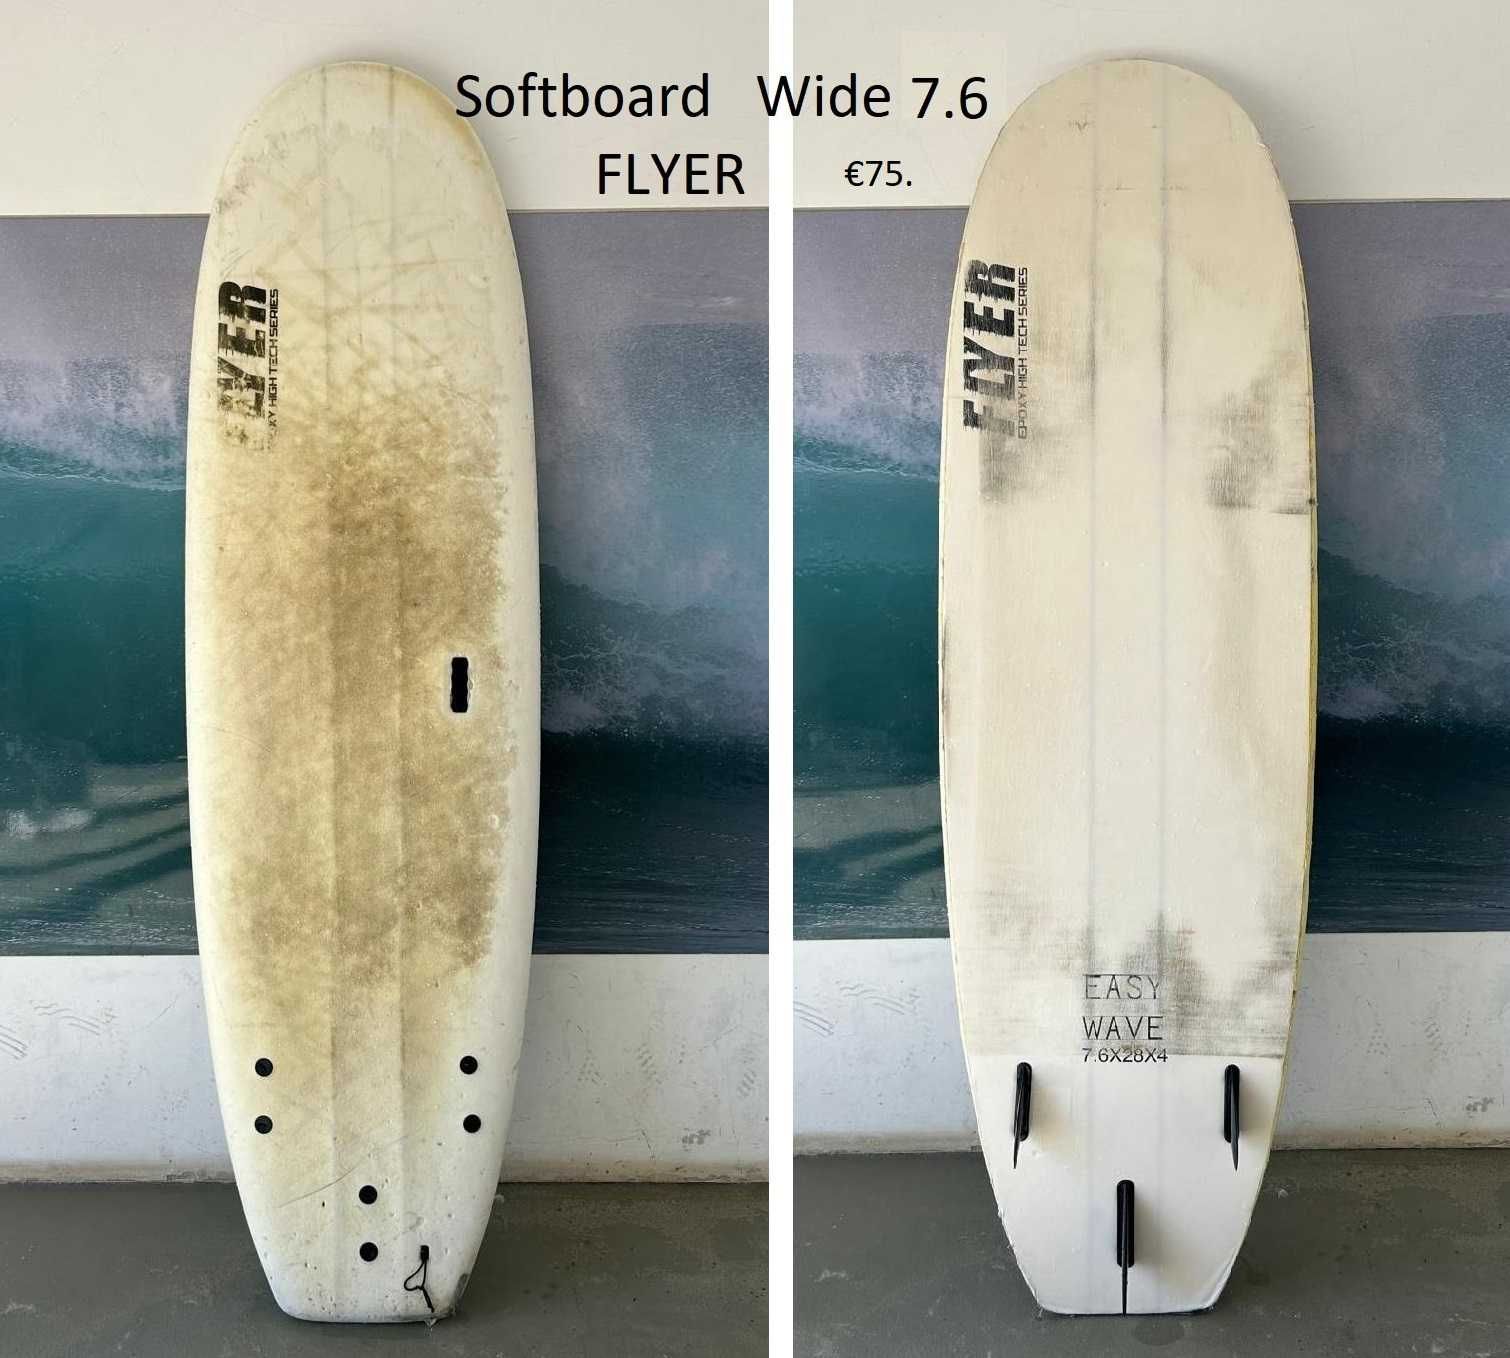 Pranchas de Surf Softboard usadas